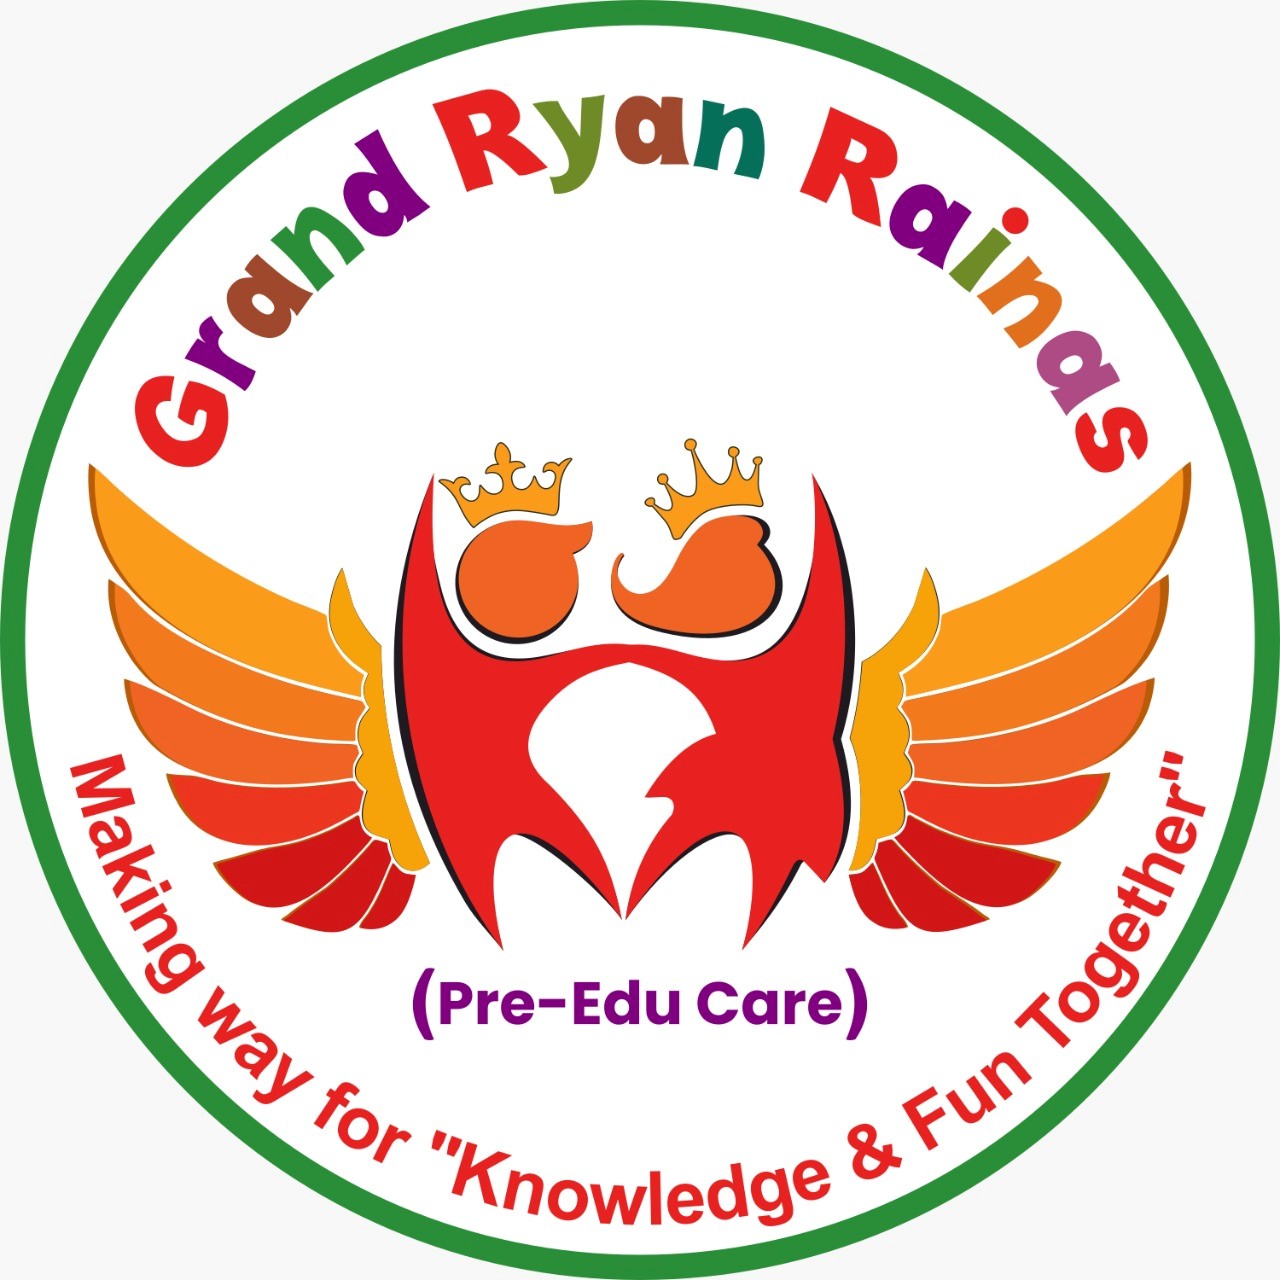 Grand Ryan Rainas Pre-Edu Care